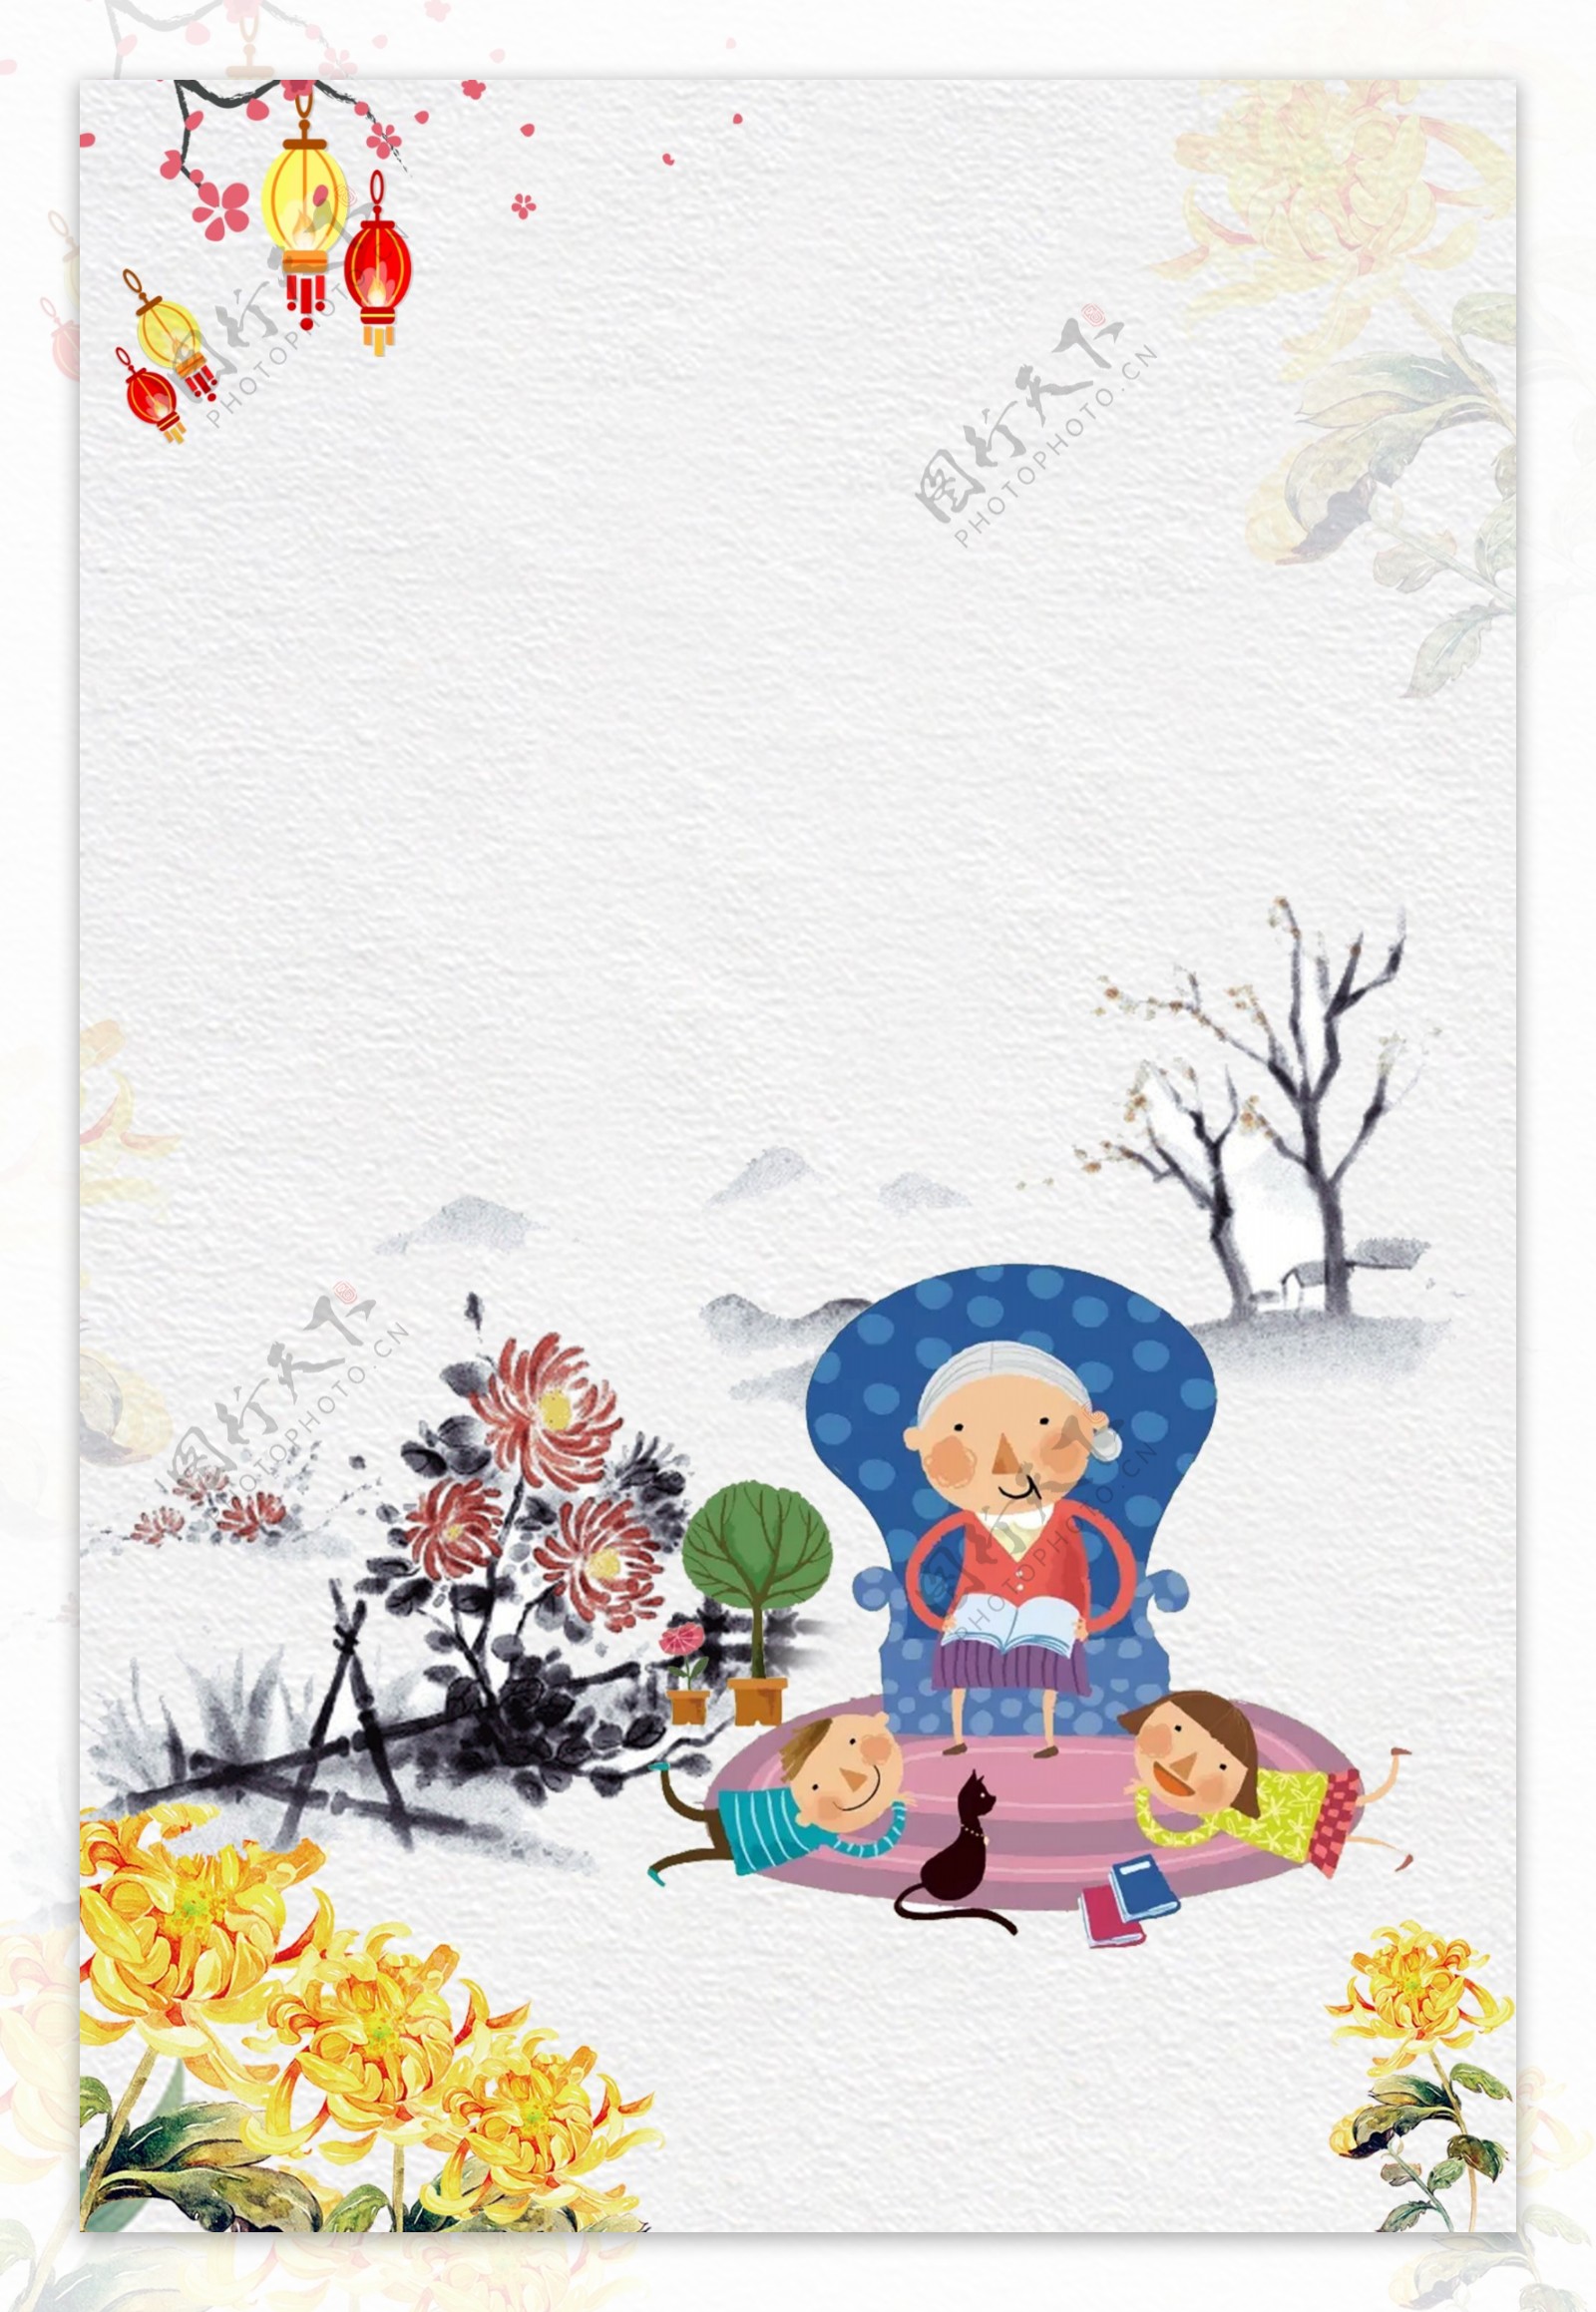 彩绘重阳节老人儿童海报背景素材